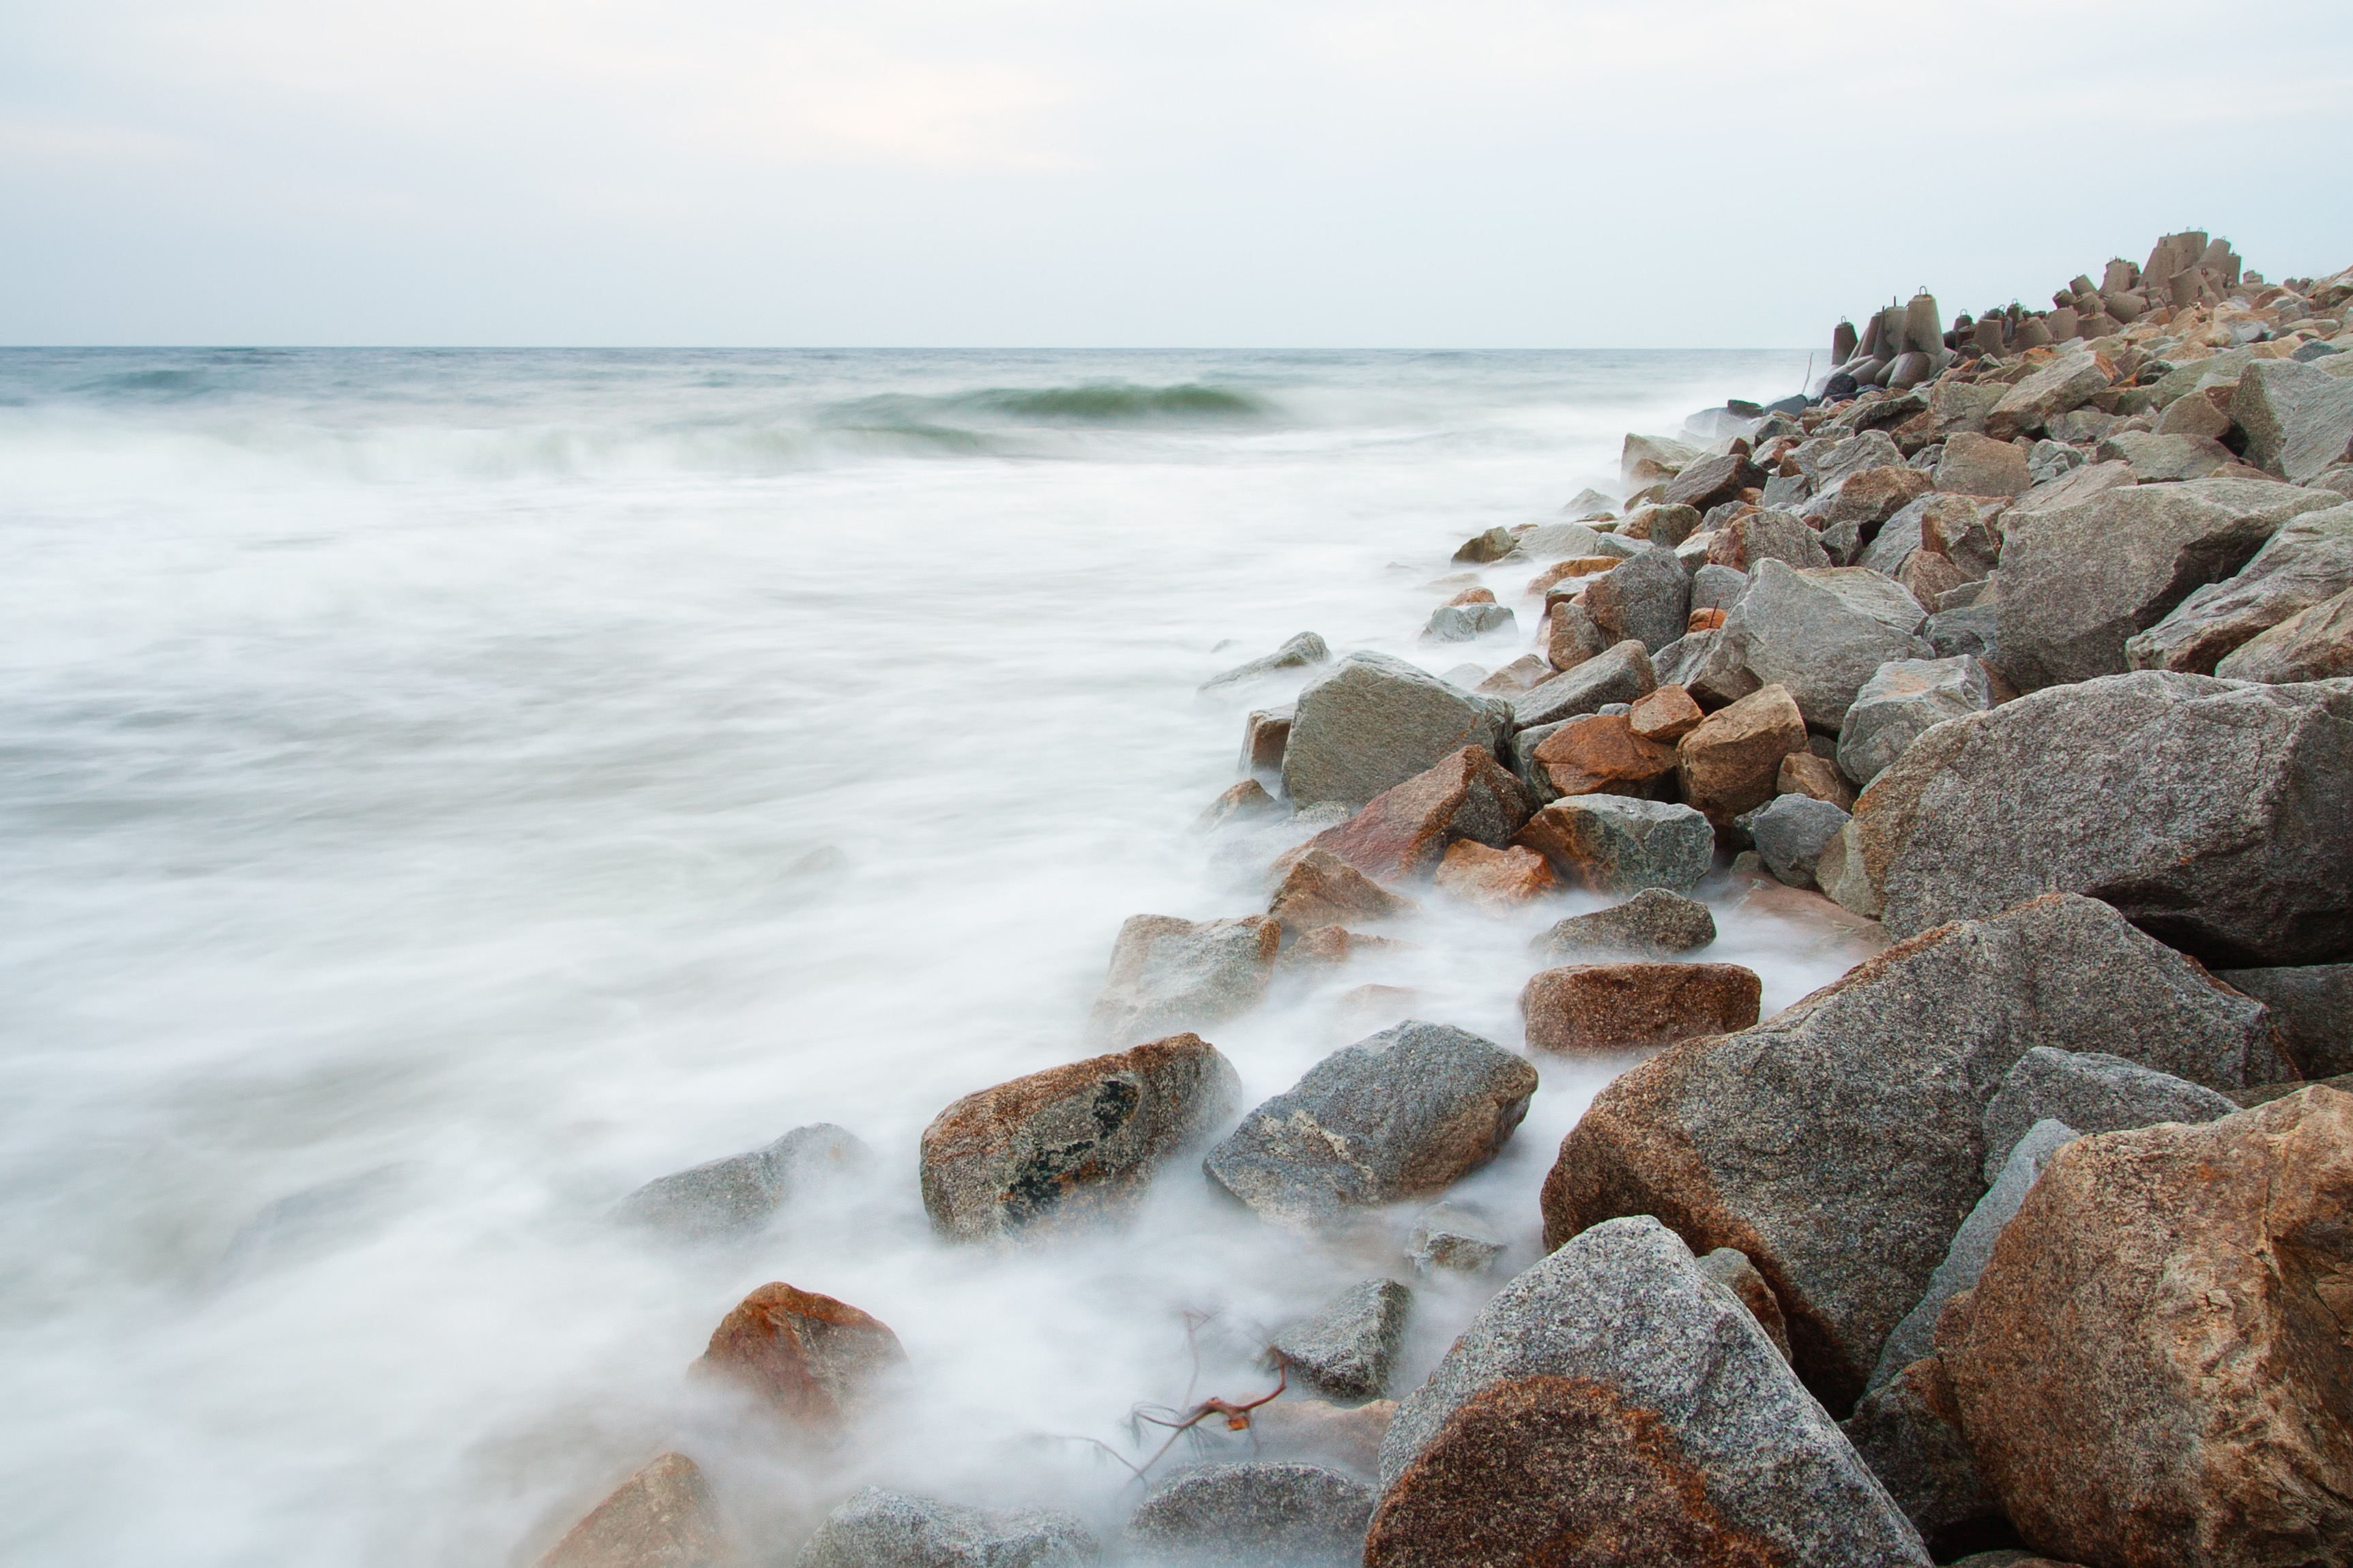 stone-breakwater-photographed-on-long-exposure-sbi-300870579.jpg